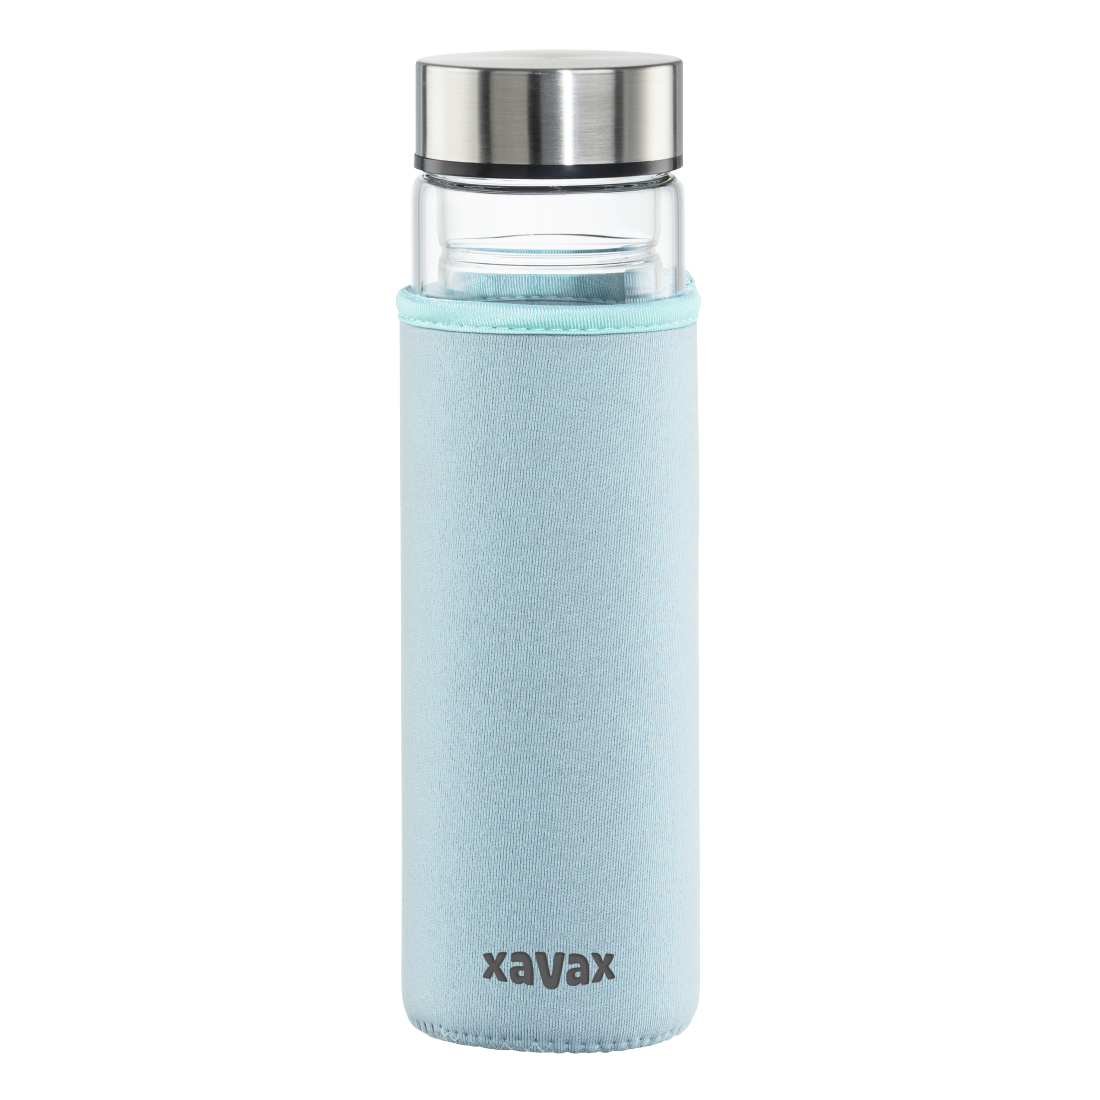 abx3 Druckfähige Abbildung 3 - Xavax, Glasflasche, 450 ml, mit Schutzhülle, Einsatz, für Kohlensäure u. heiß/kalt